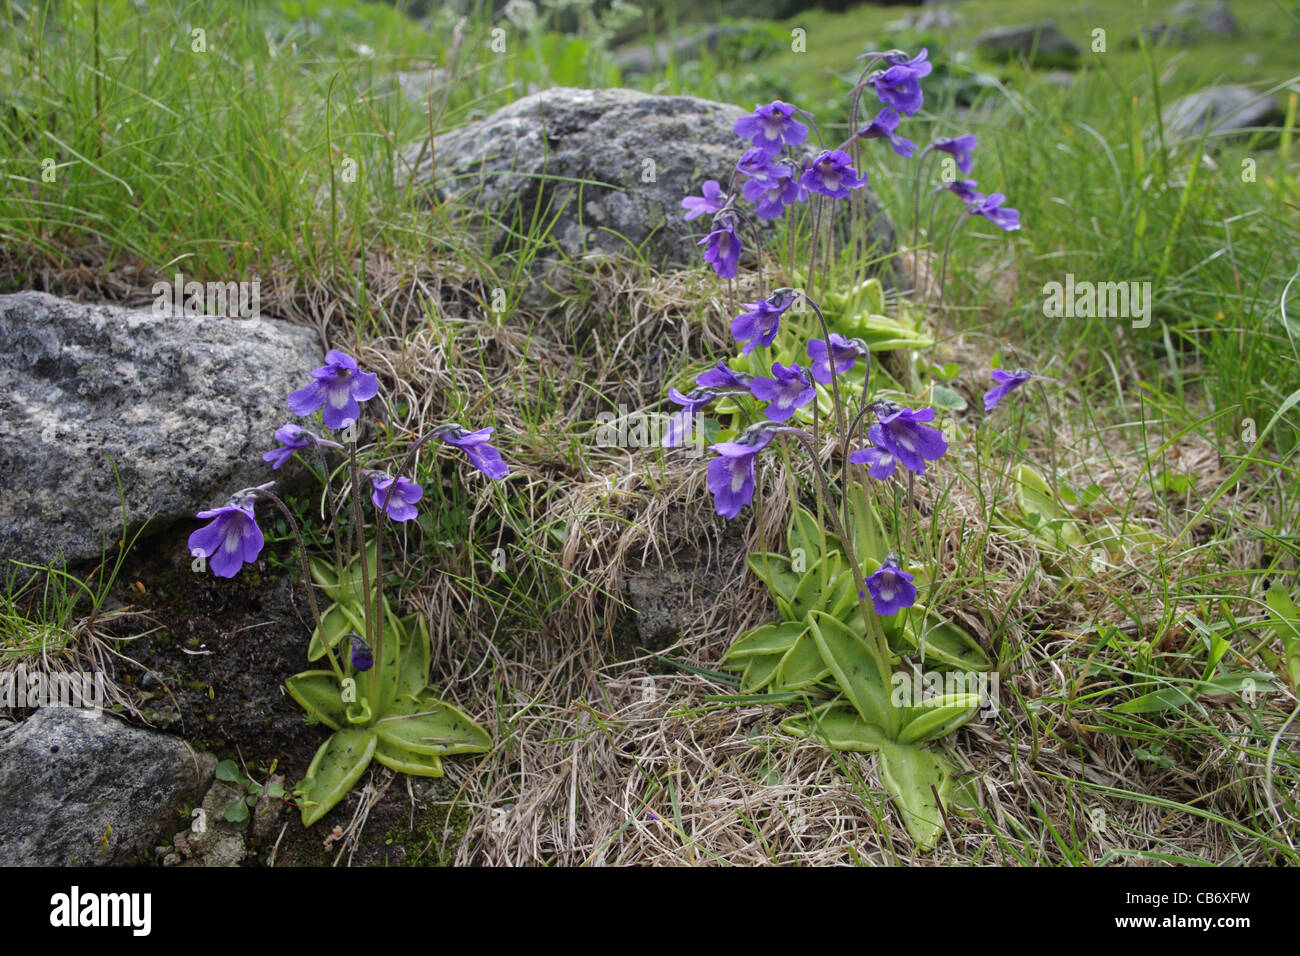 Grassette Pinguicula balcanica, Balkanian, subalpin, plante carnivore endémique dans les Balkans, en Bulgarie Banque D'Images